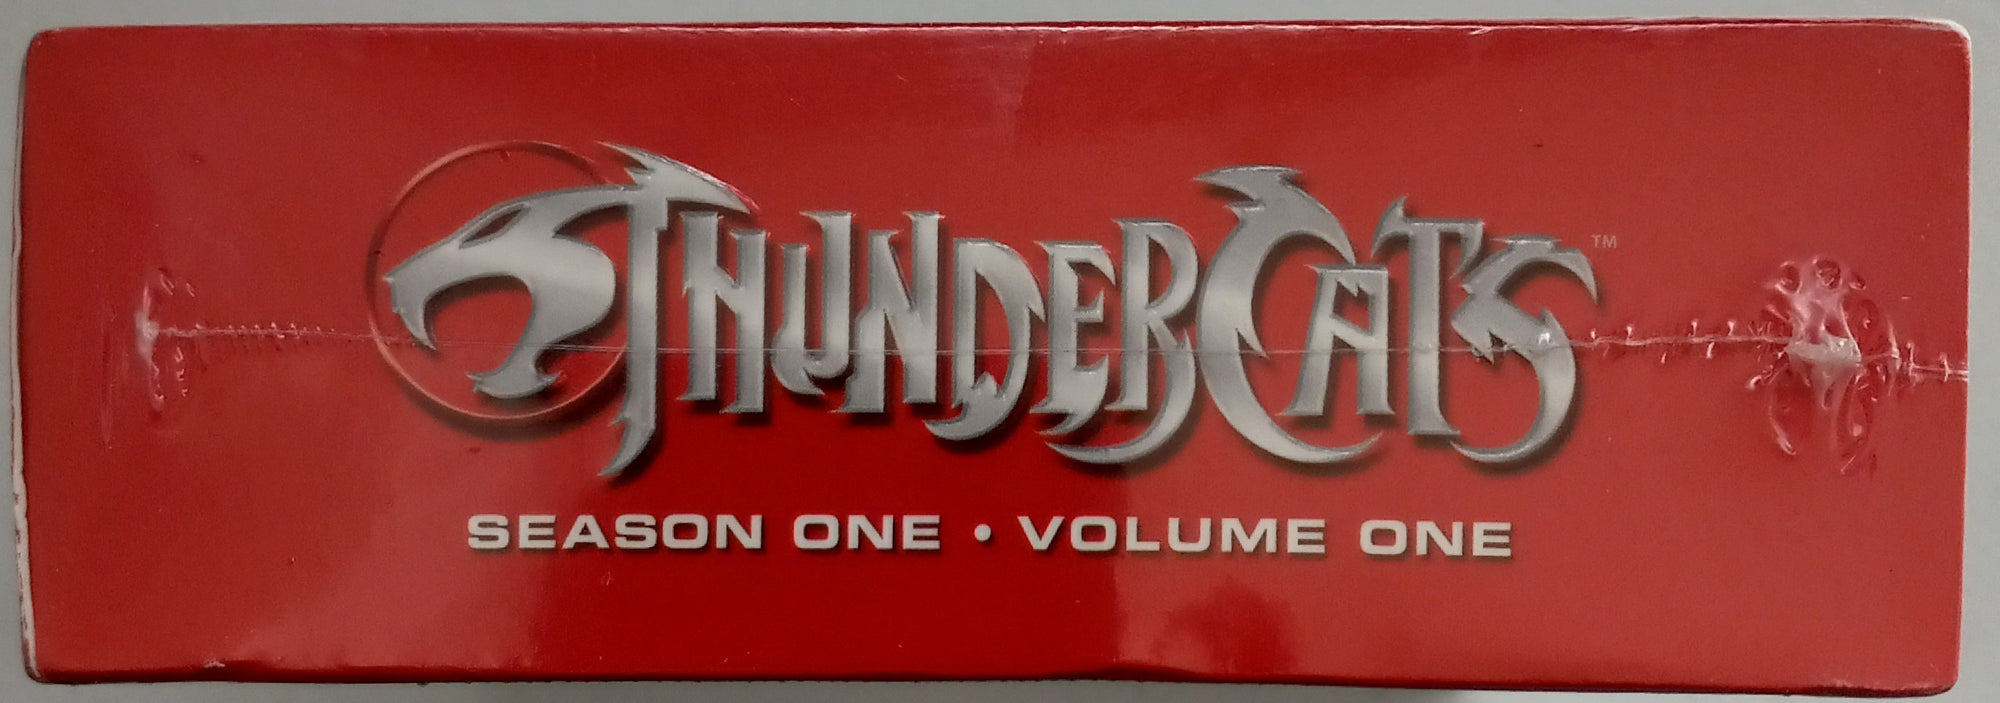 Thundercats-Season-1-DVD-Sealed